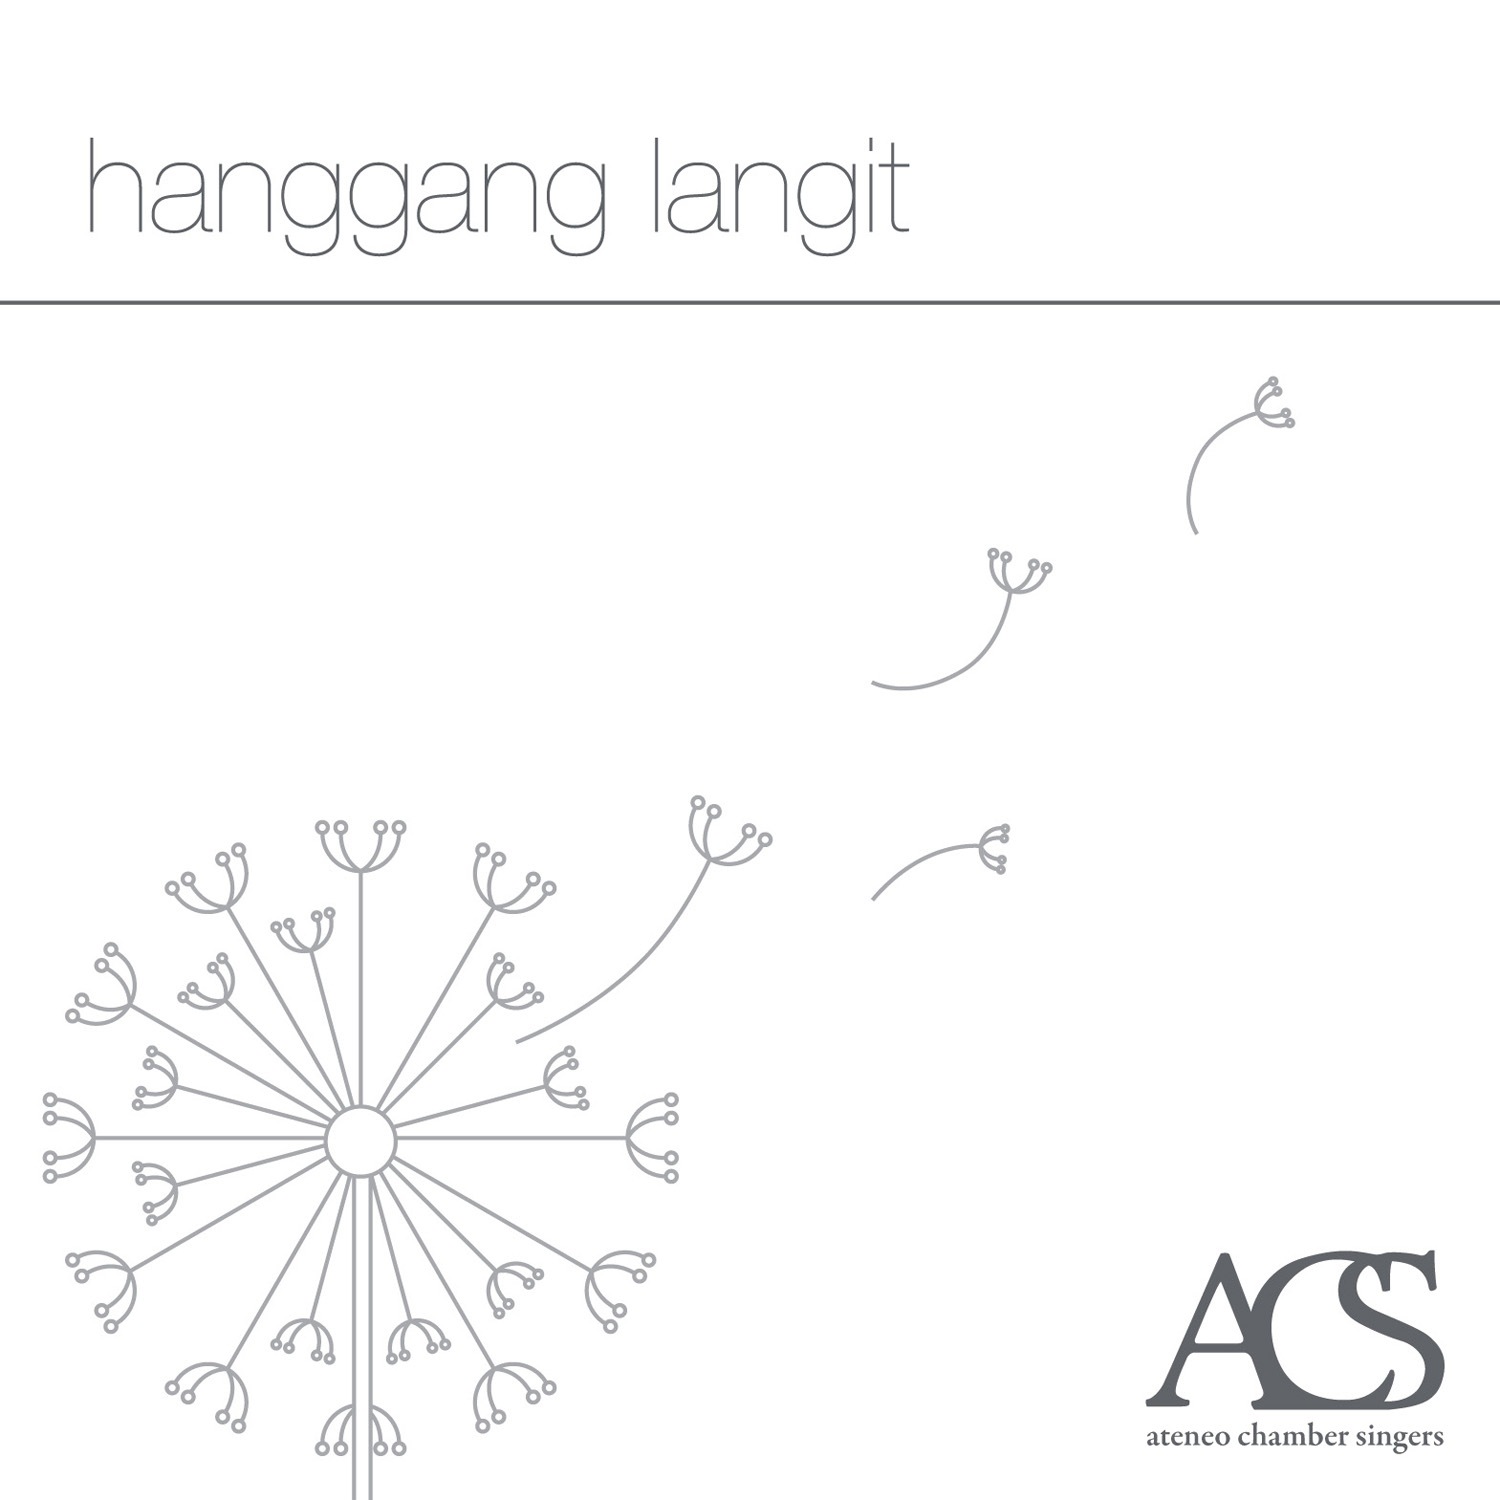 CD- HANGGANG LANGIT by ACS